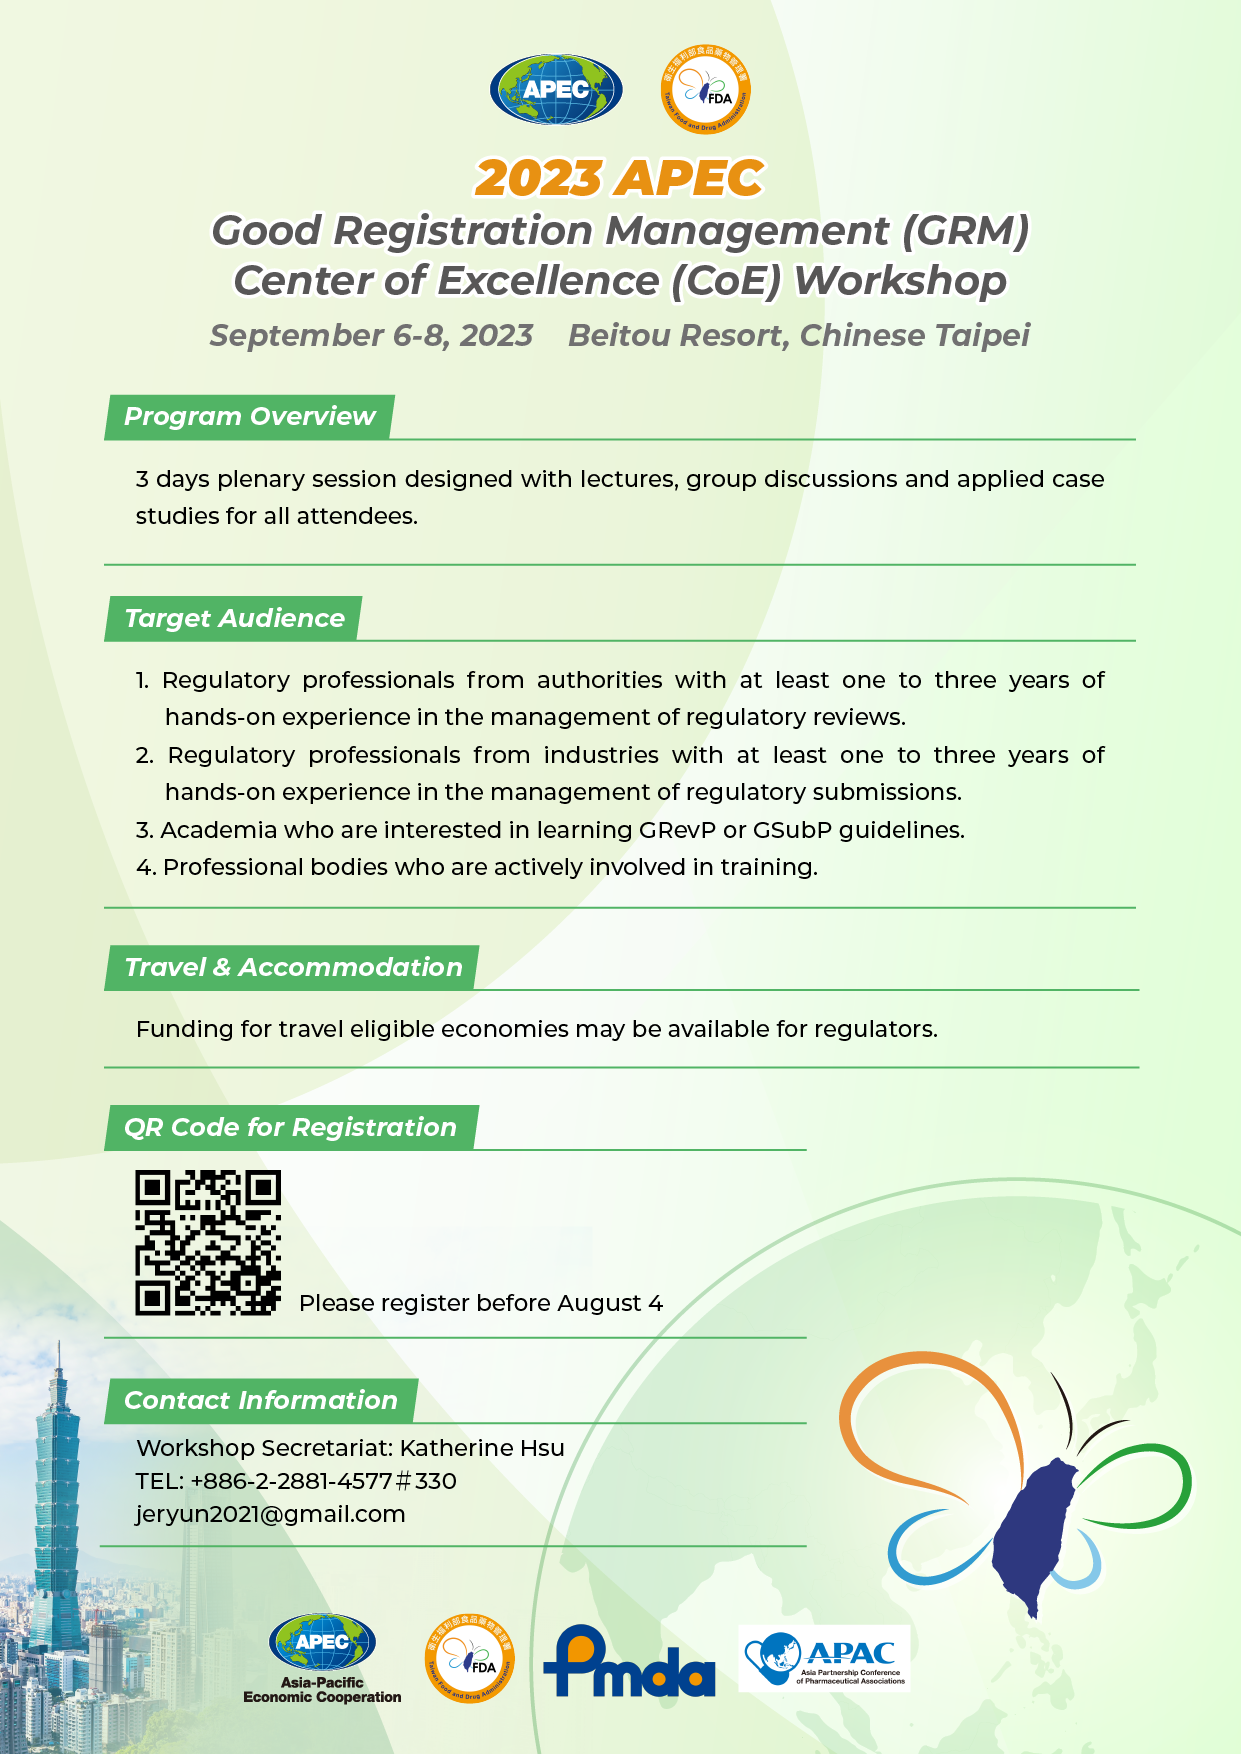 2023 APEC Good Registration Management Center of Excellence Workshop